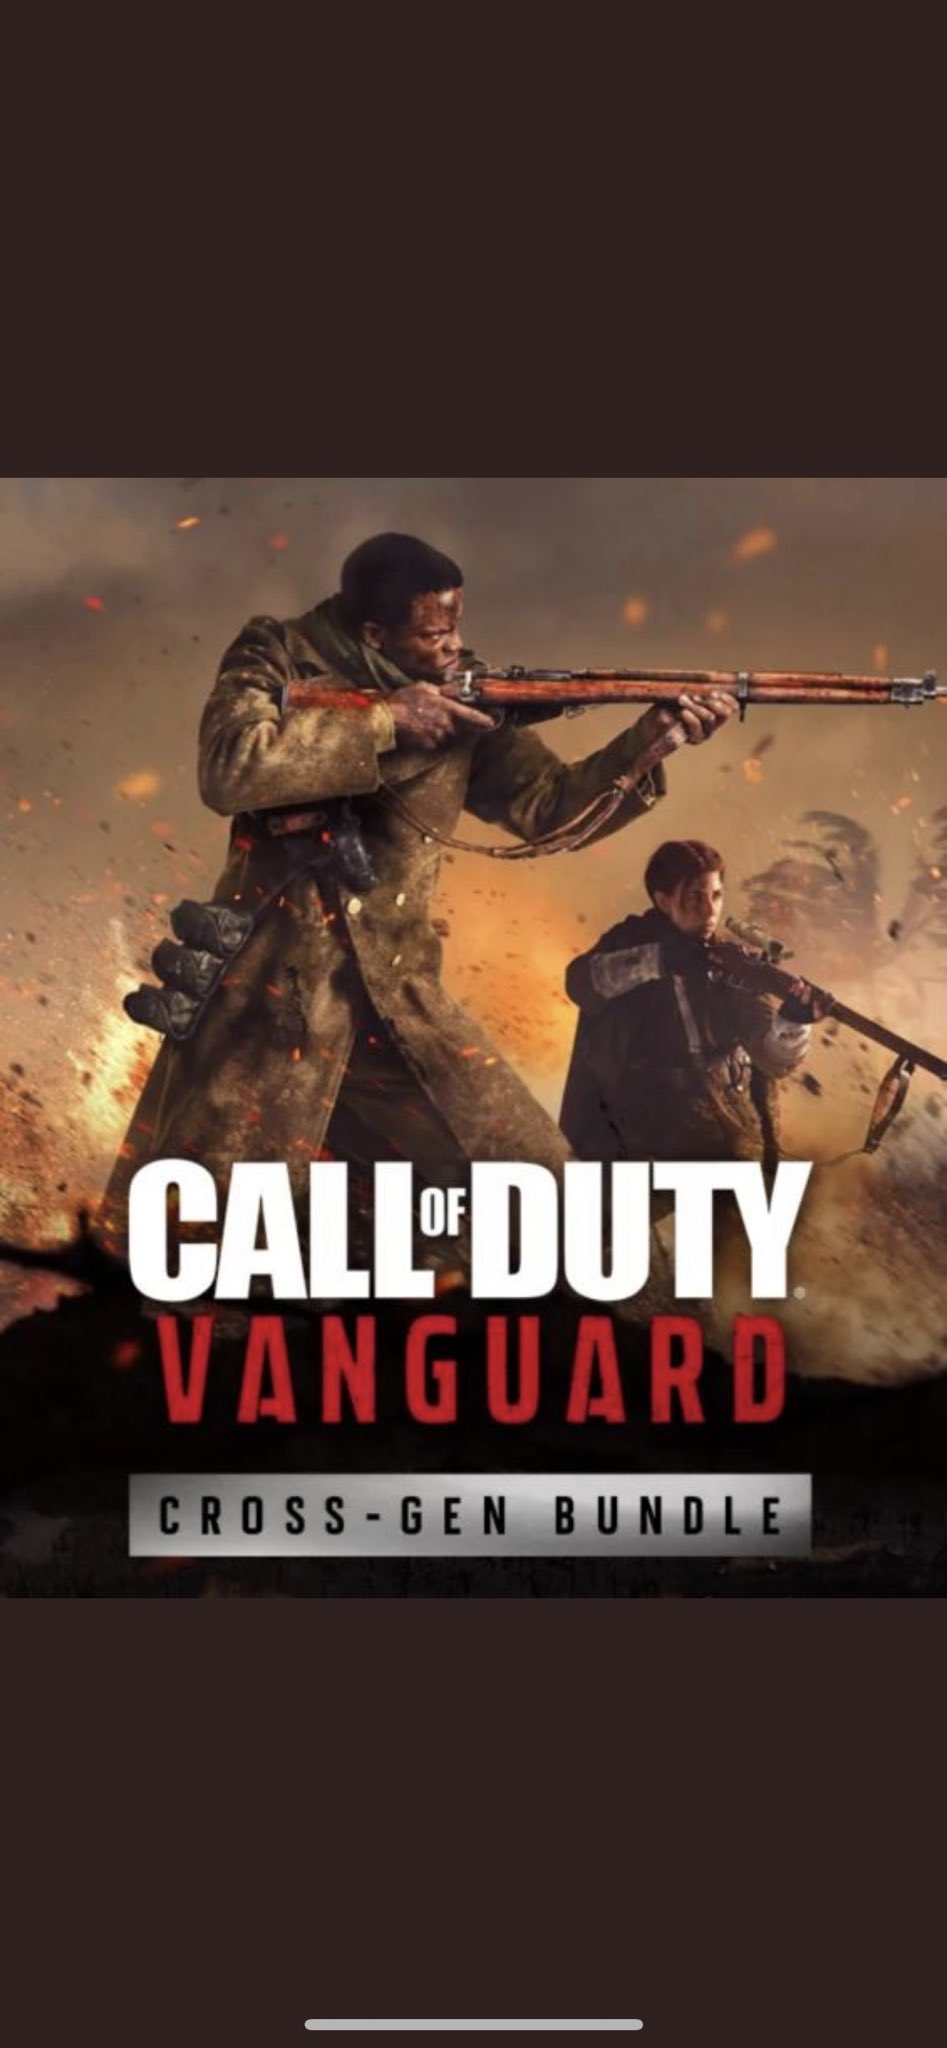 Yeni Call of Duty oyunu Call of Duty Vanguard geliyor: Yeni görseller sızdırıldı